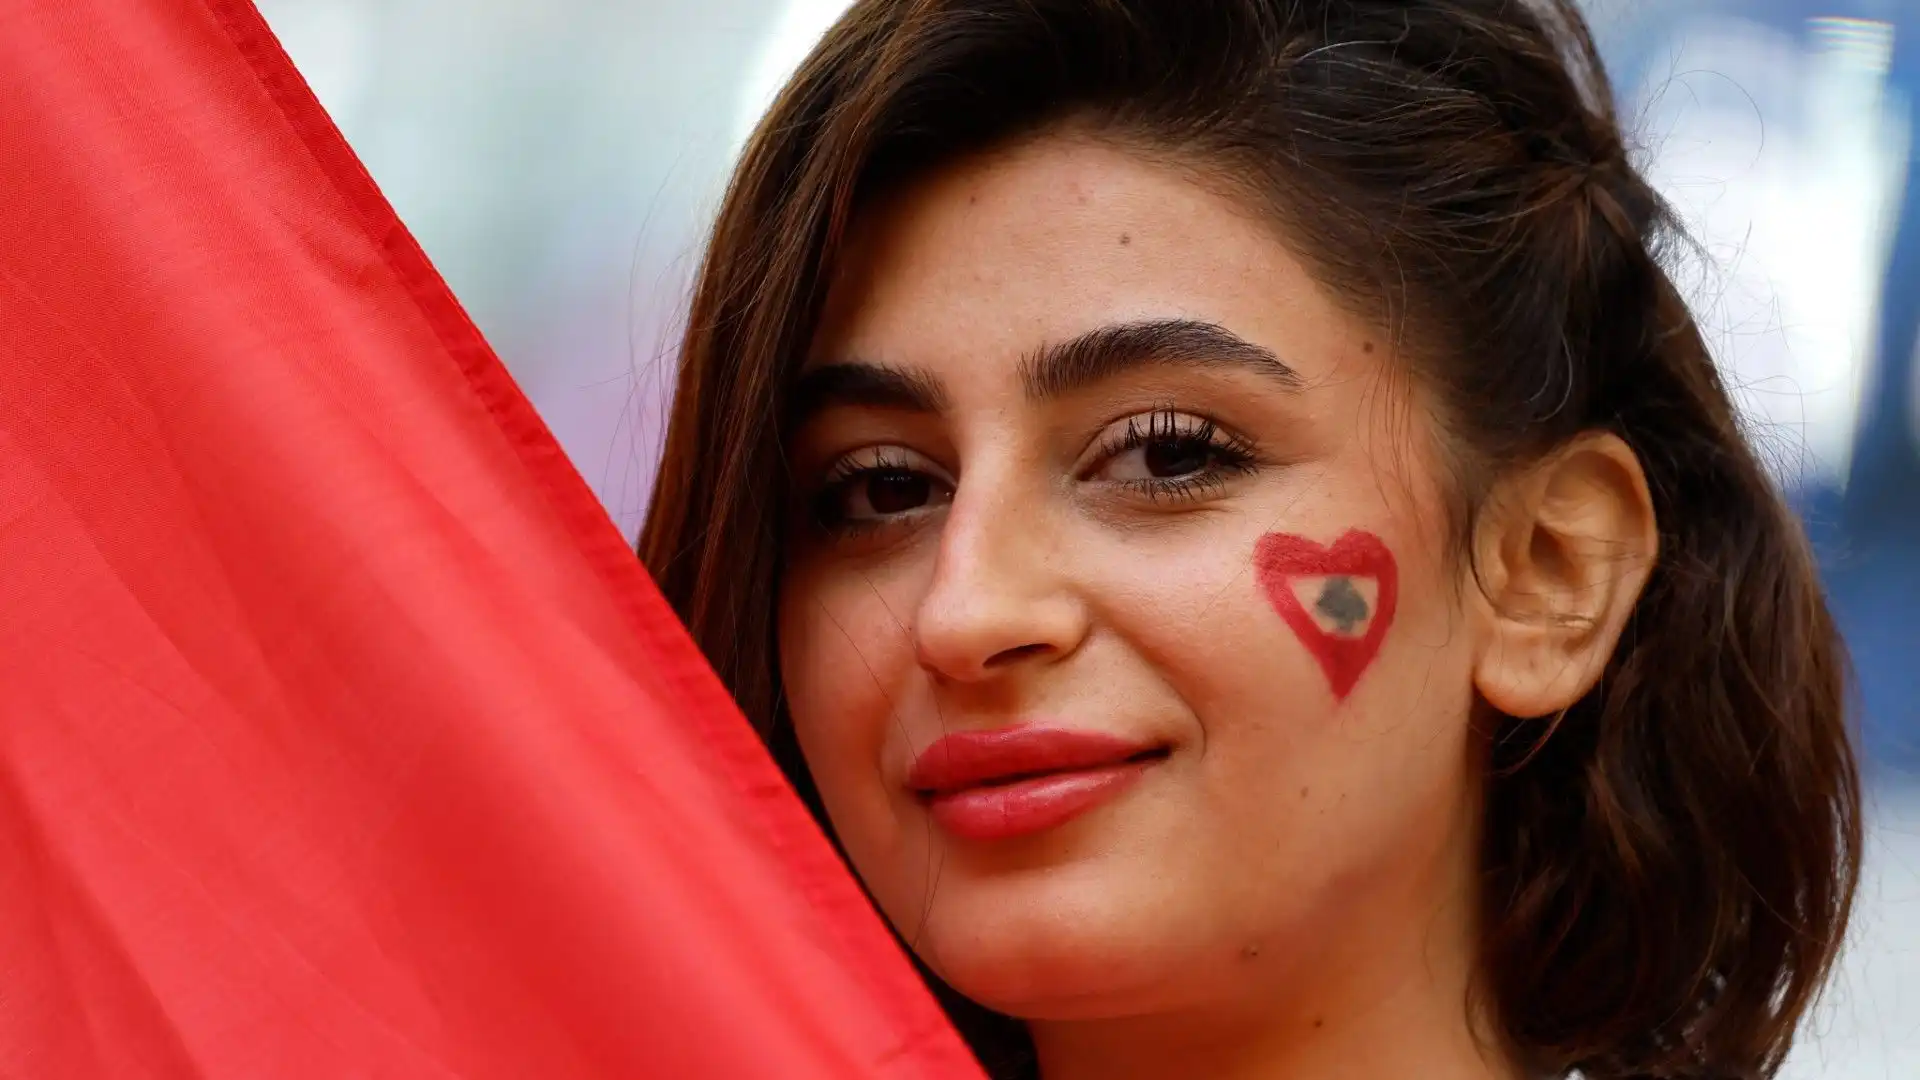 Questa fan ha la bandiera del Libano disegnata sul viso